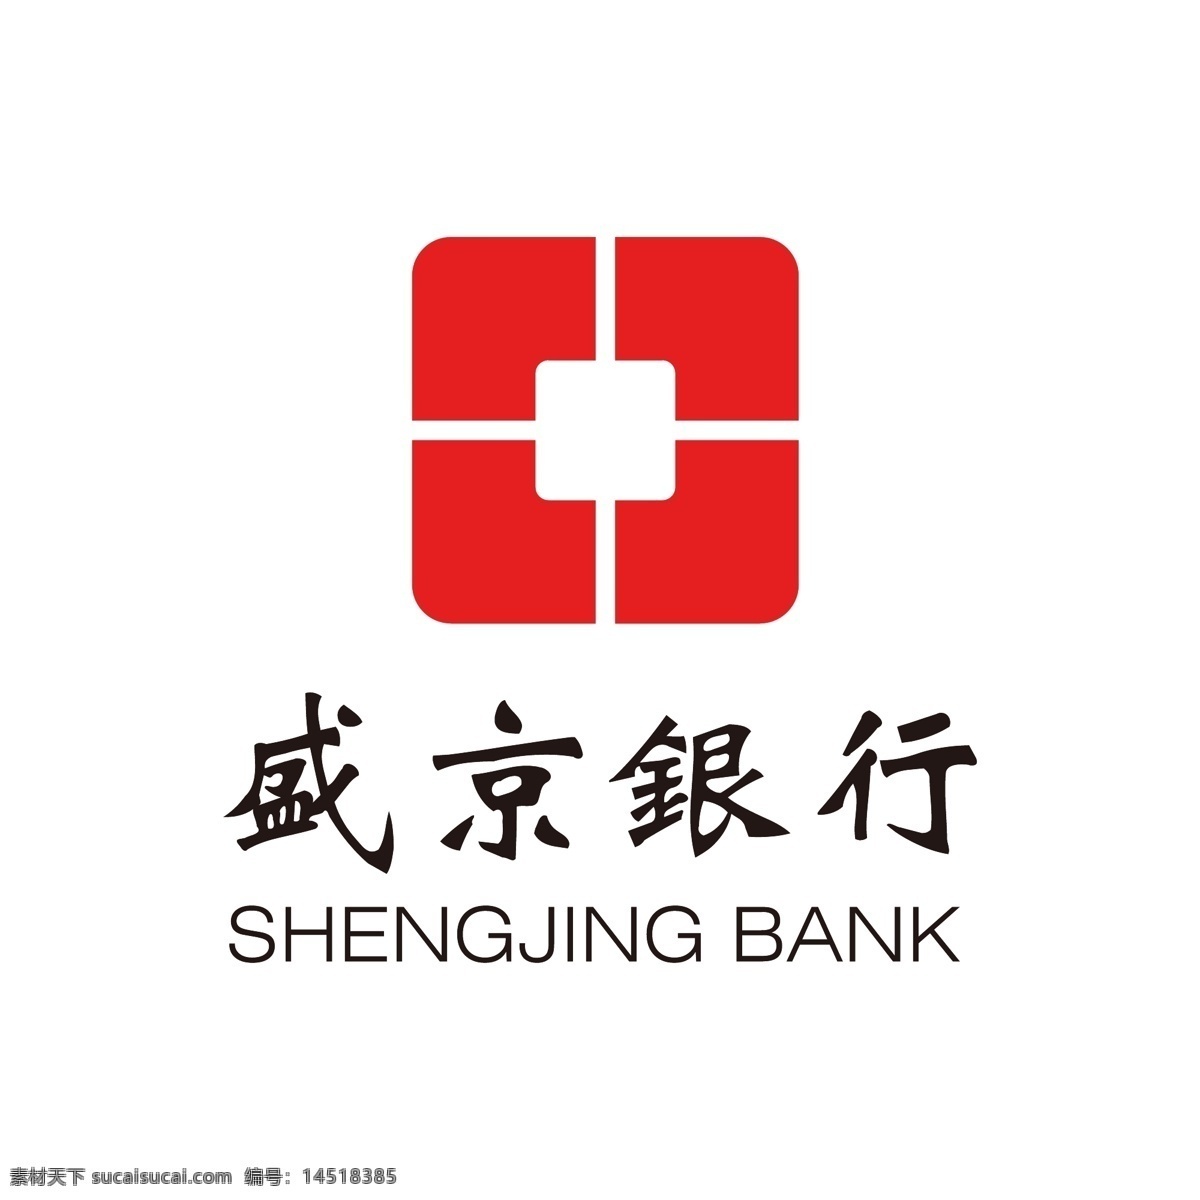 盛京银行标志 盛京银行 盛京 银行 logo 银行标志 银行logo